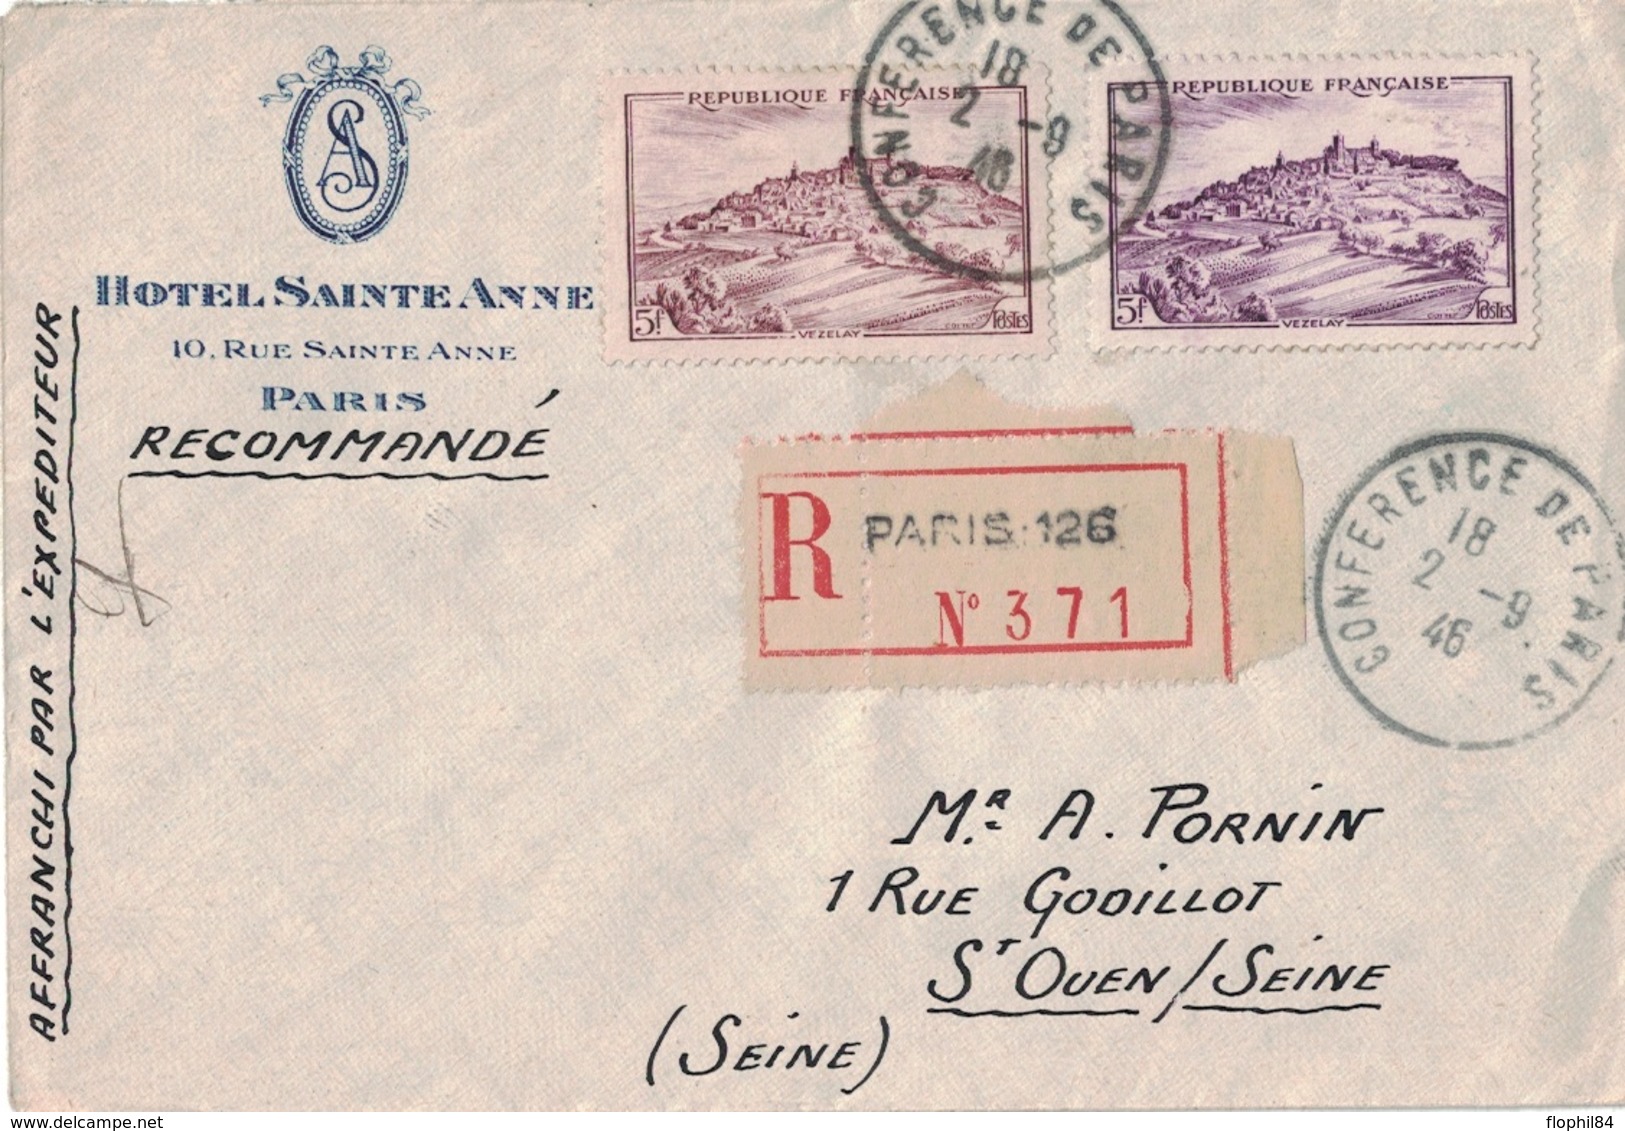 PARIS 126 - CACHET CONFERENCE DE PARIS 2-9-1946 - LETTRE RECOMMANDEE AVEC N°759 X 2 (COULEURS DIFFERENTES) - VARIETE. - Posttarieven